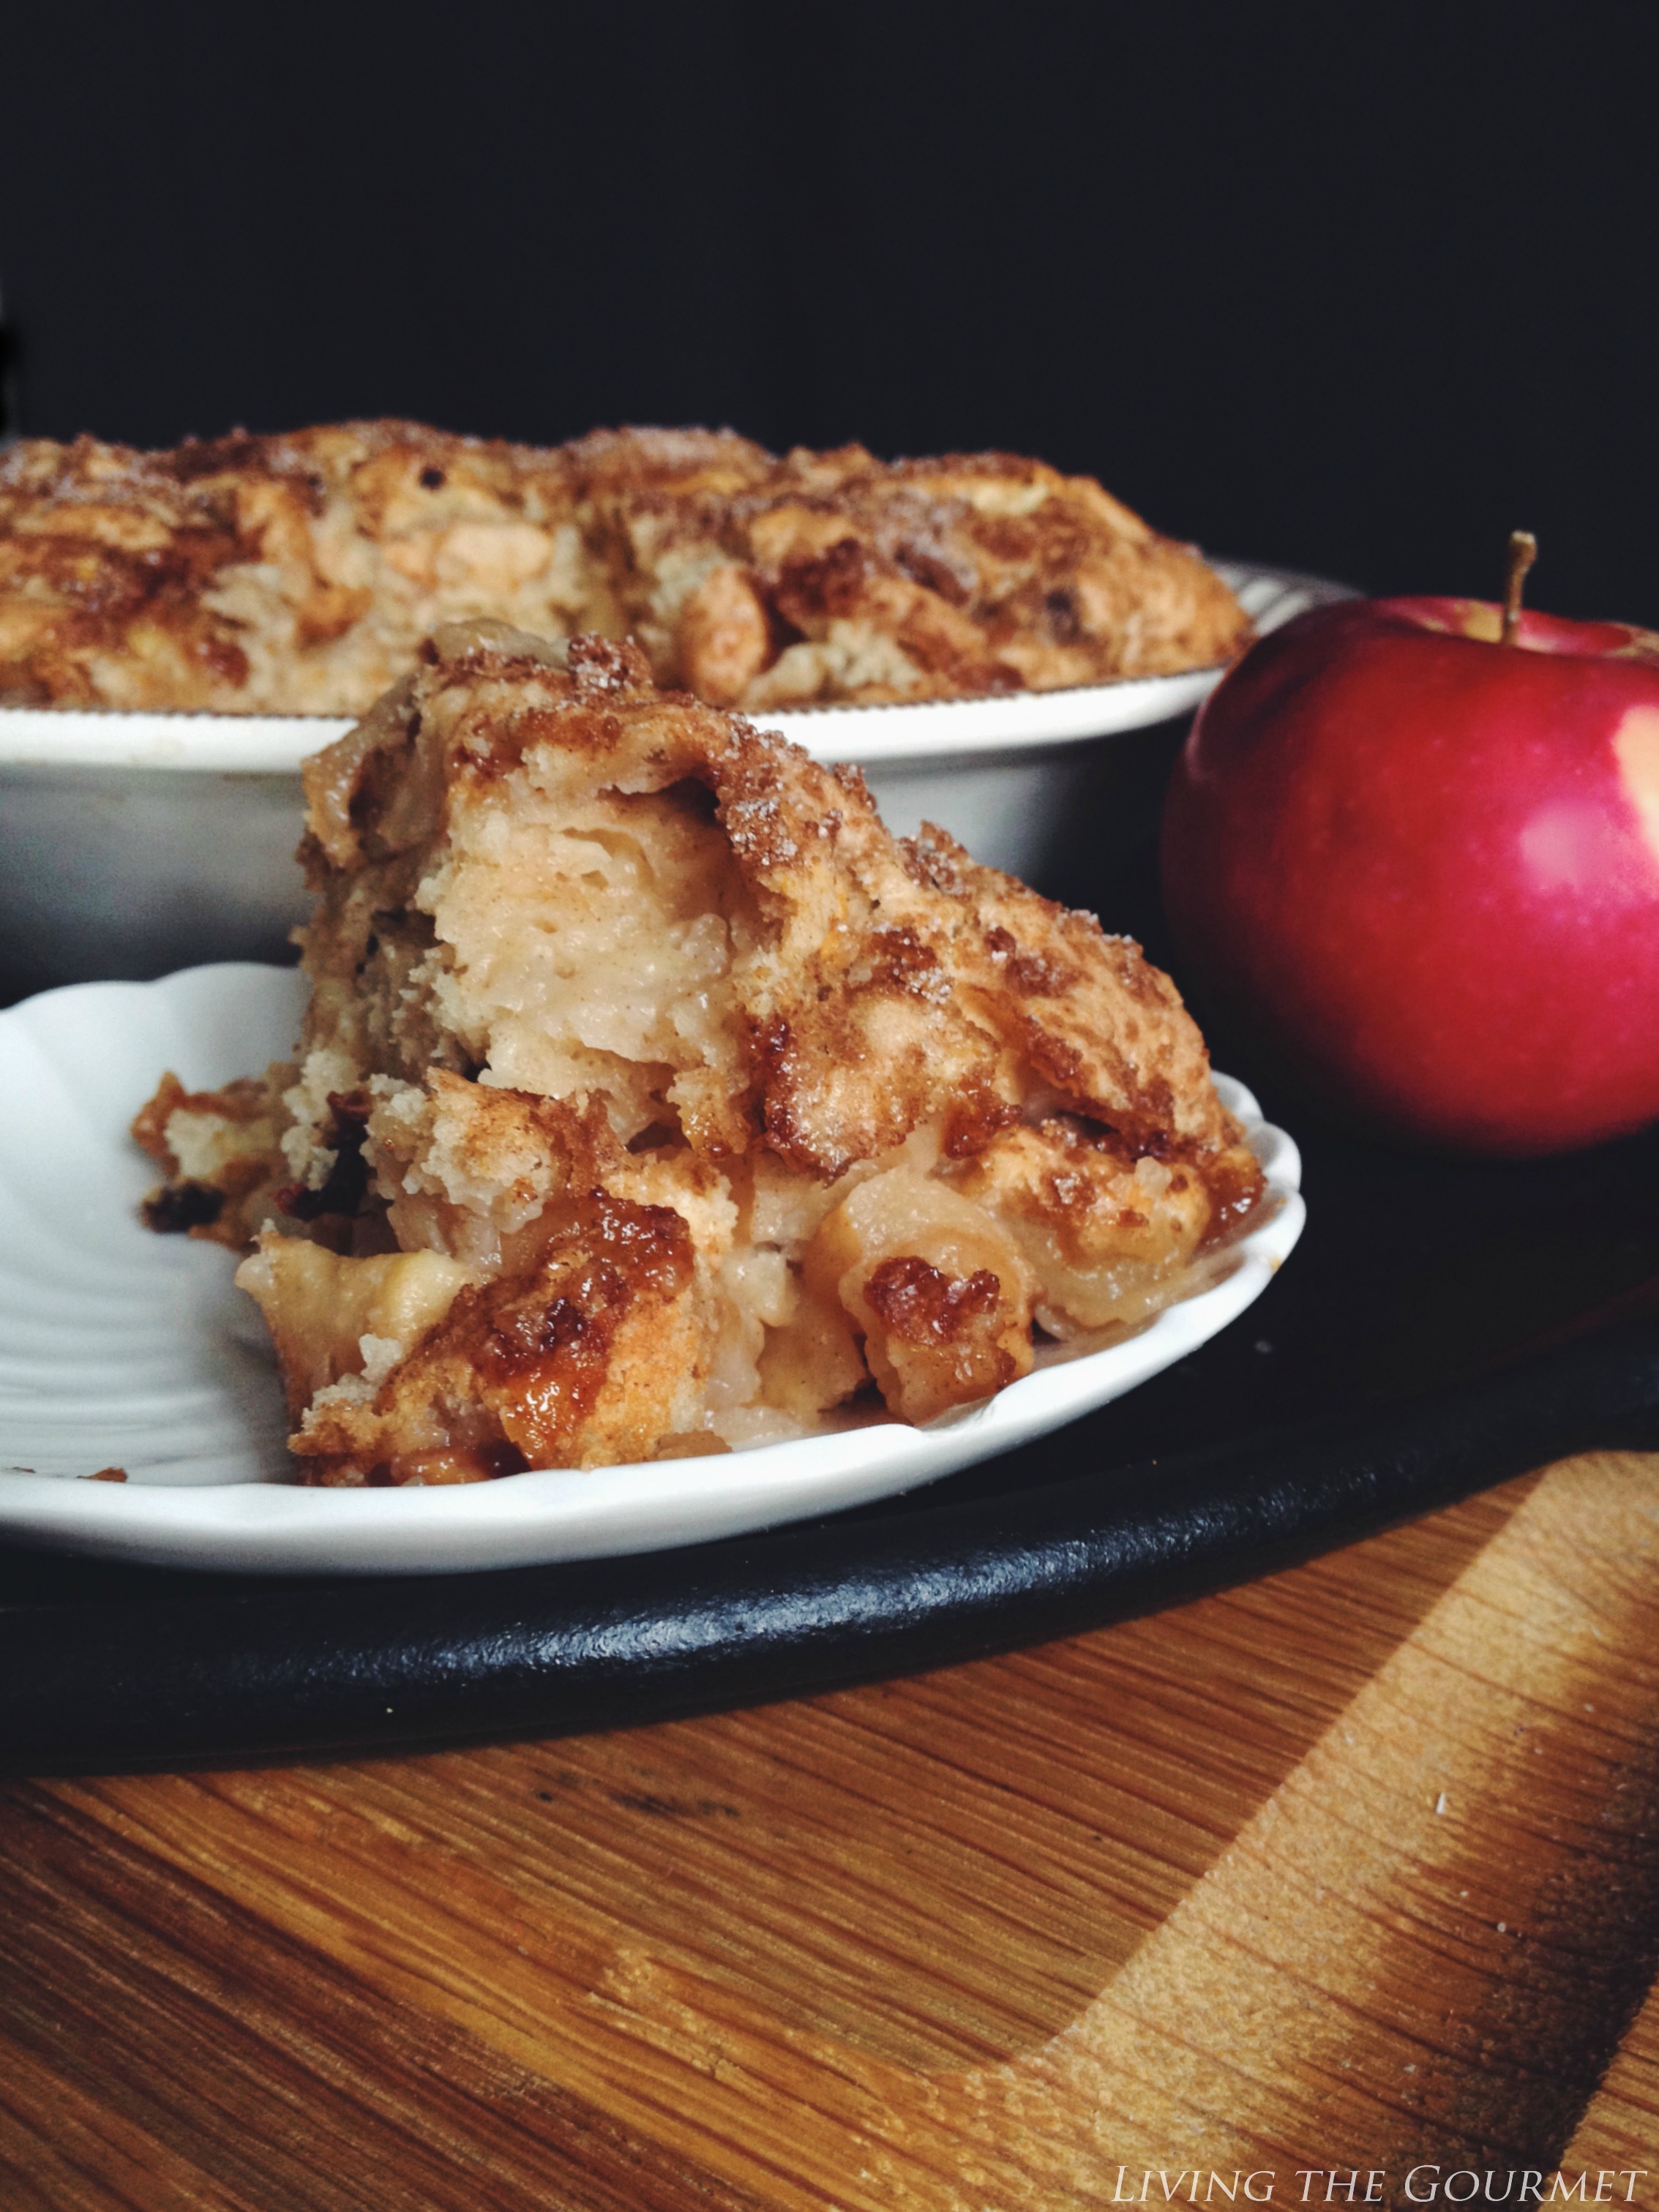 Living the Gourmet: Apple Chunck Breakfast Cake